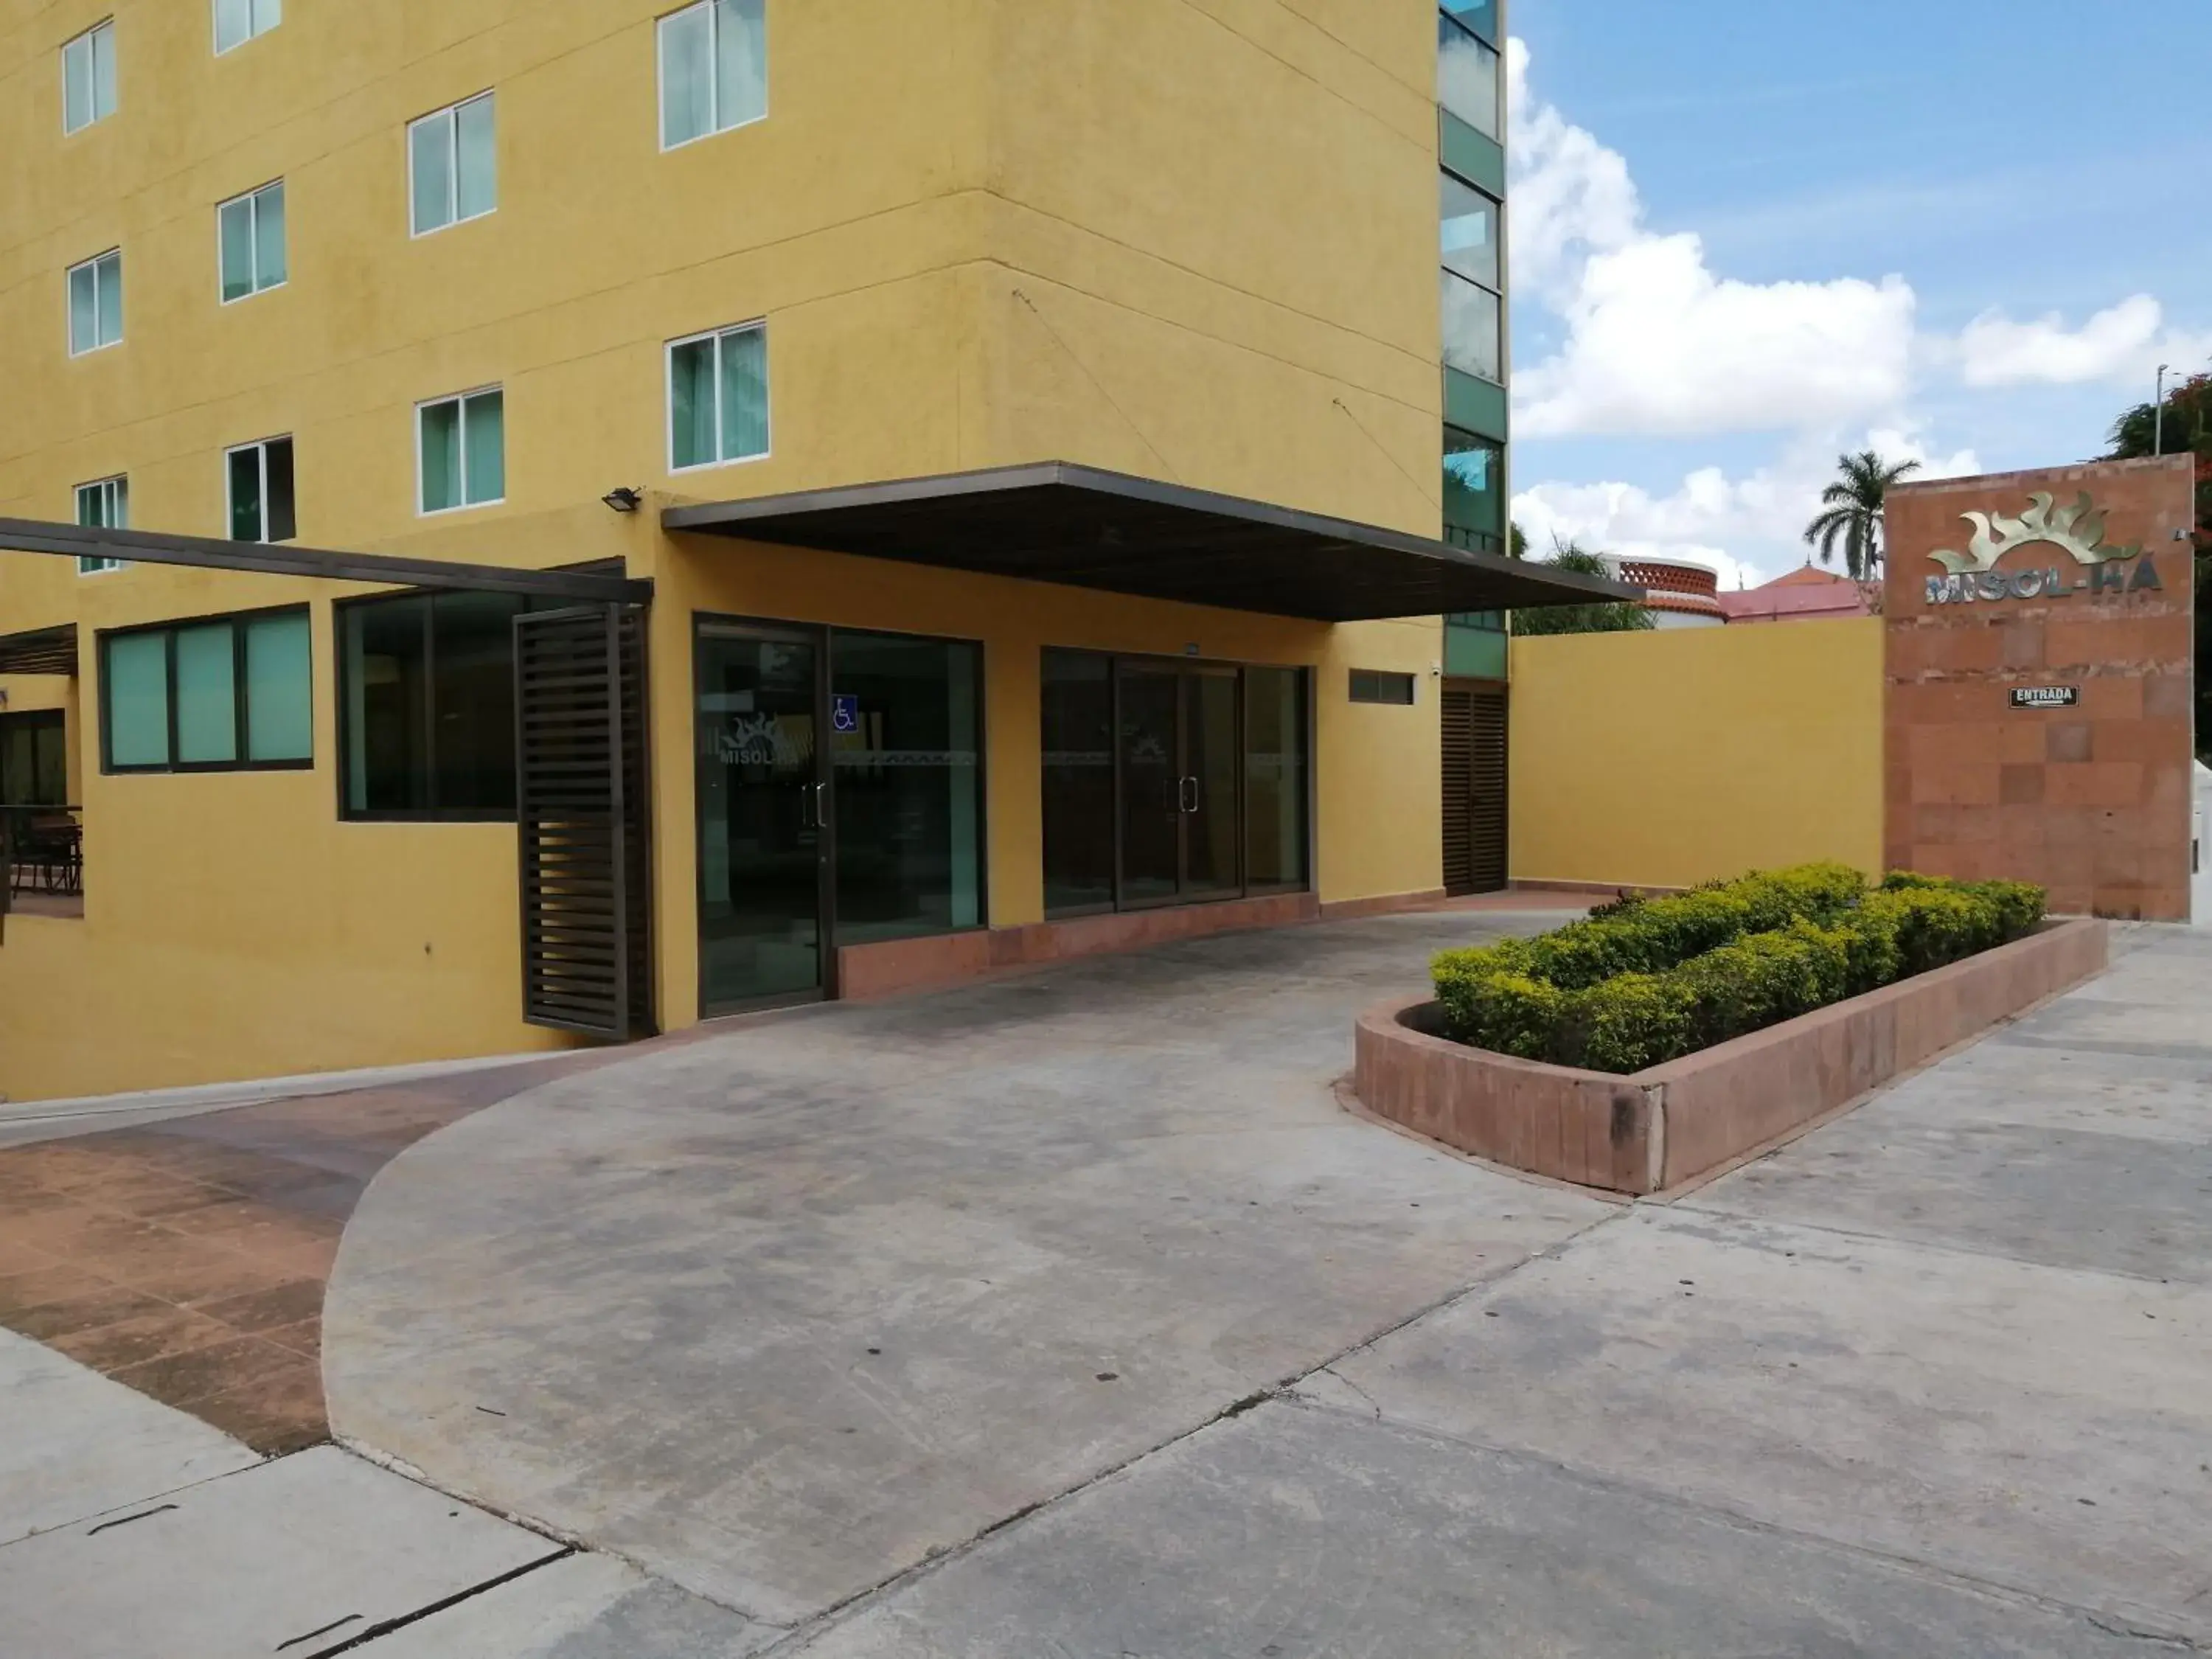 Facade/entrance in Misol-Ha Hotel Mérida